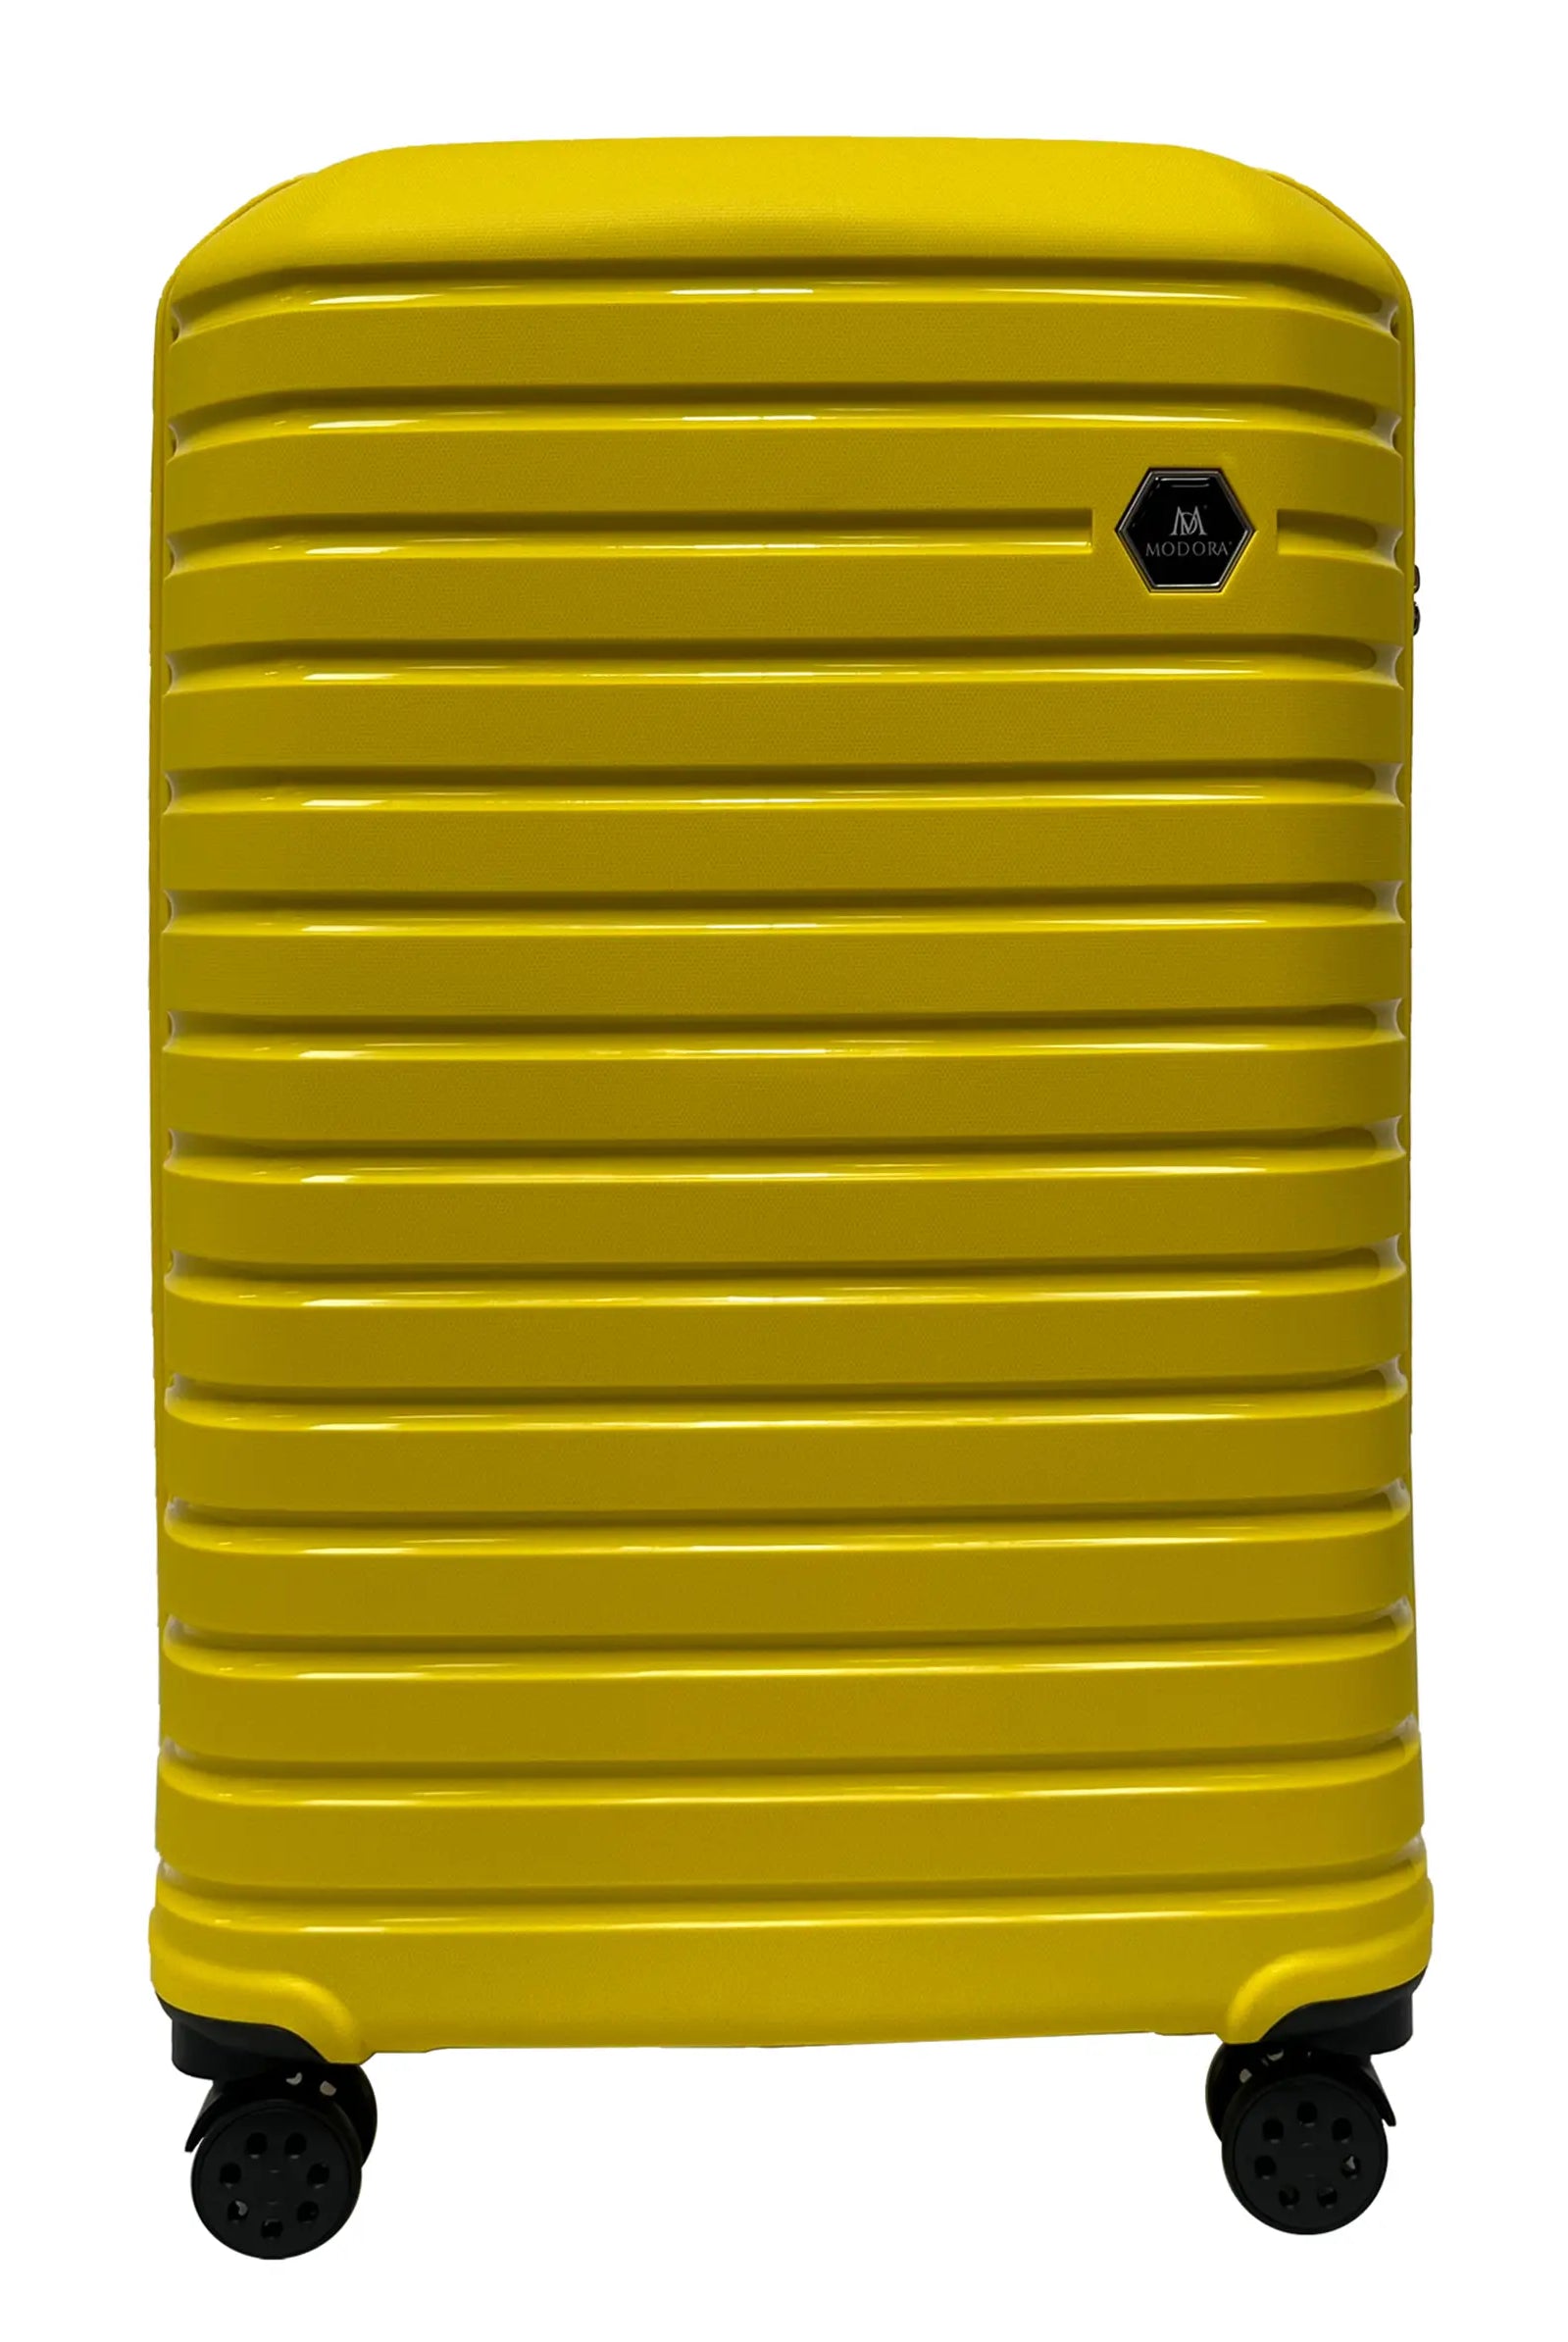 Yellow large suitcase